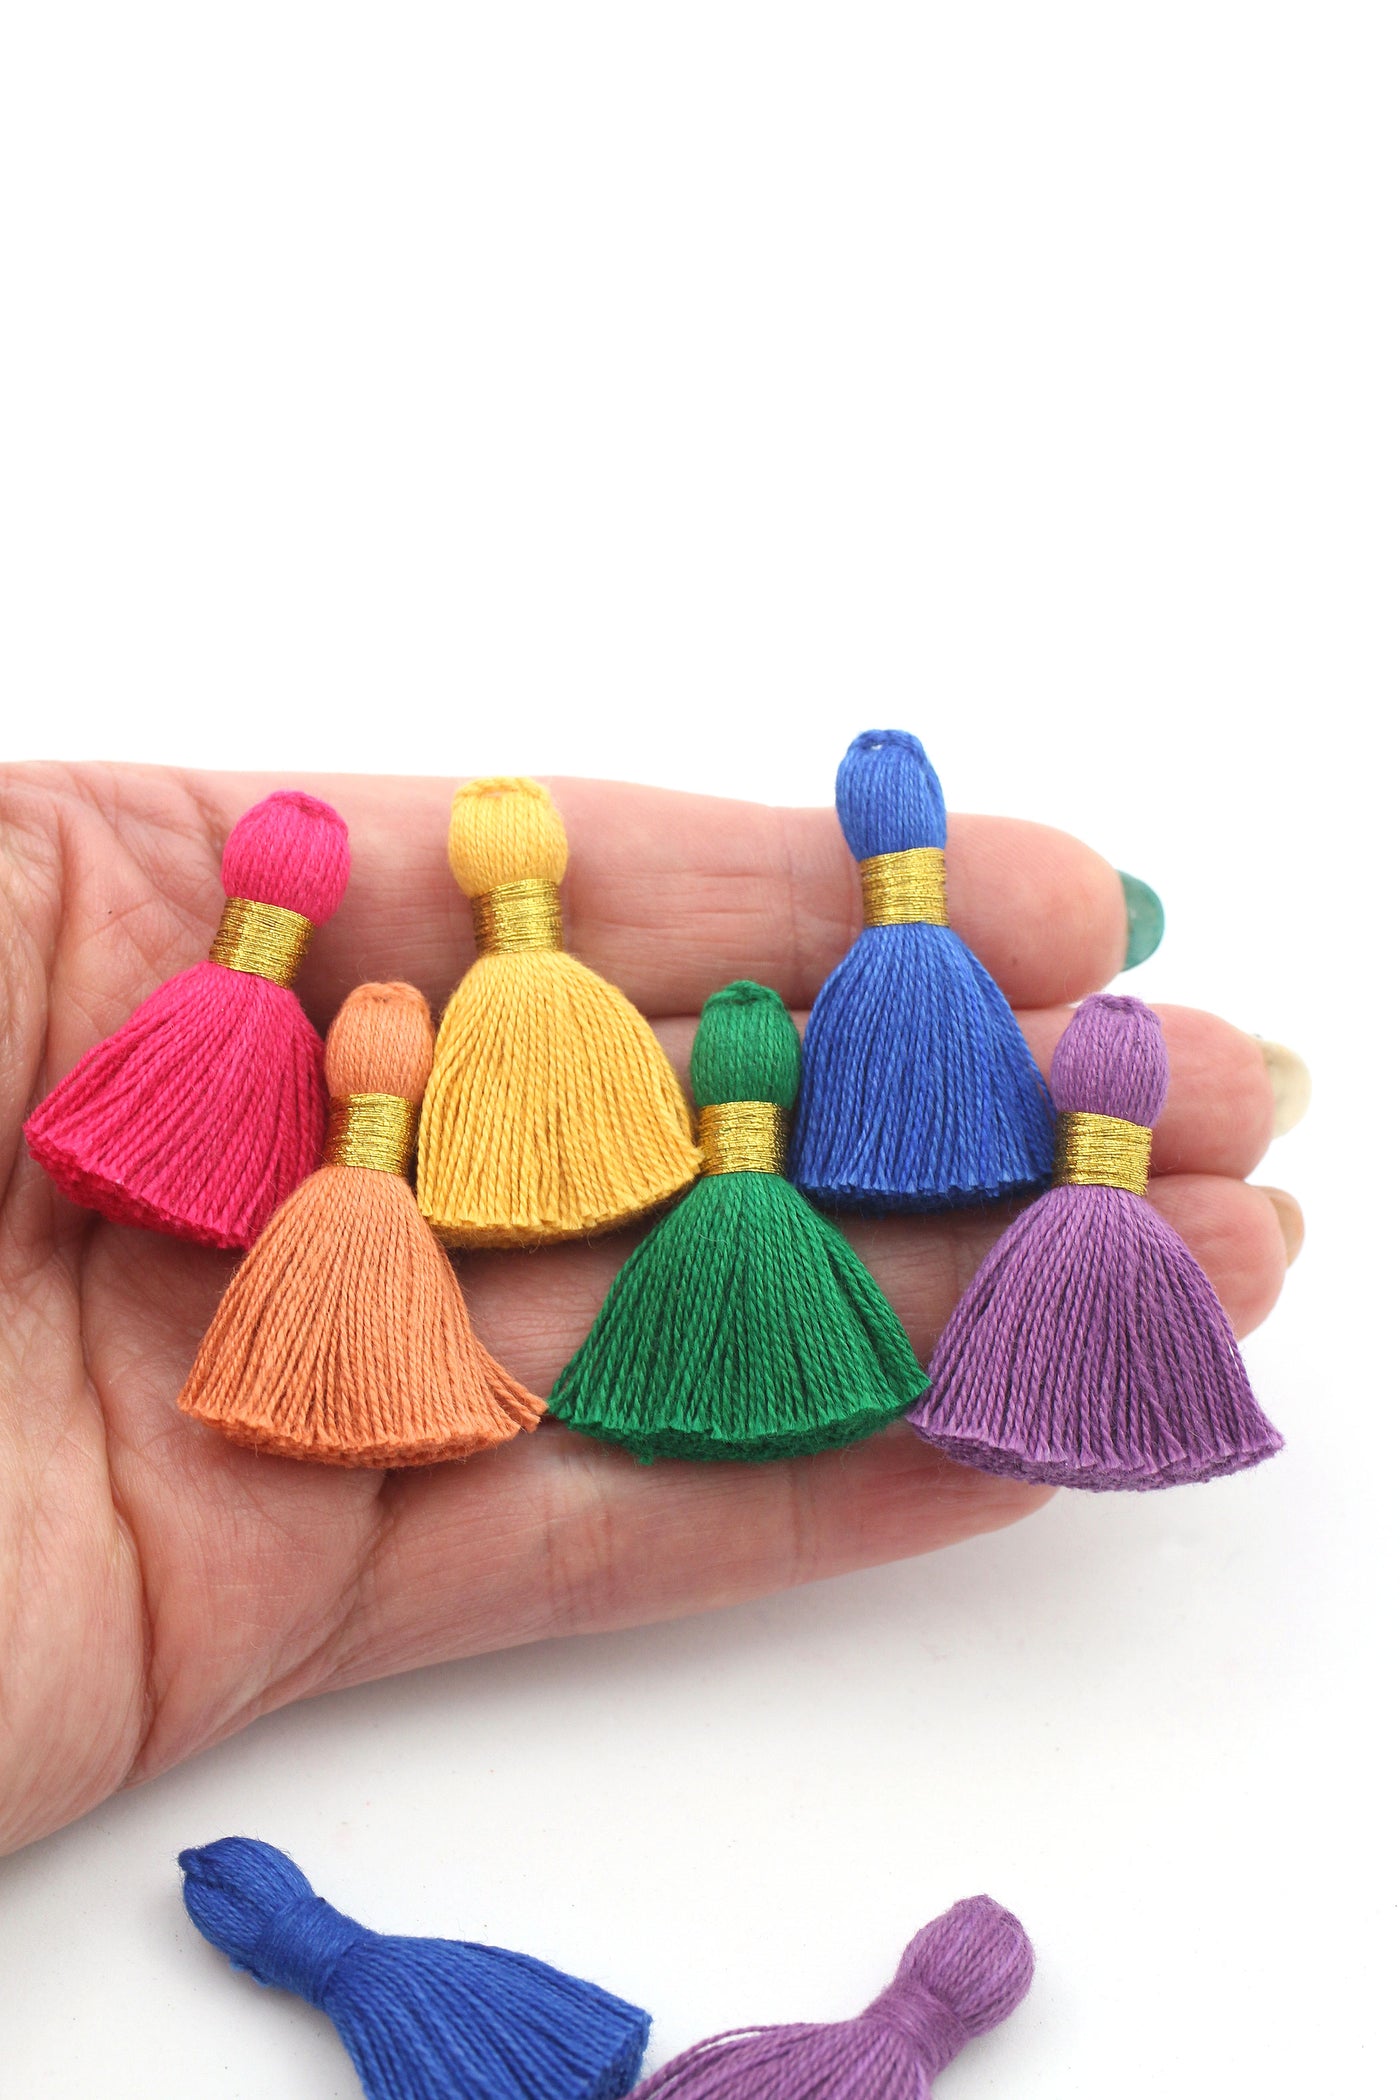 Jewel Tone Tassel Mix, 6 Mini Tassels, 1.25" Cotton Fringe for DIY Jewelry